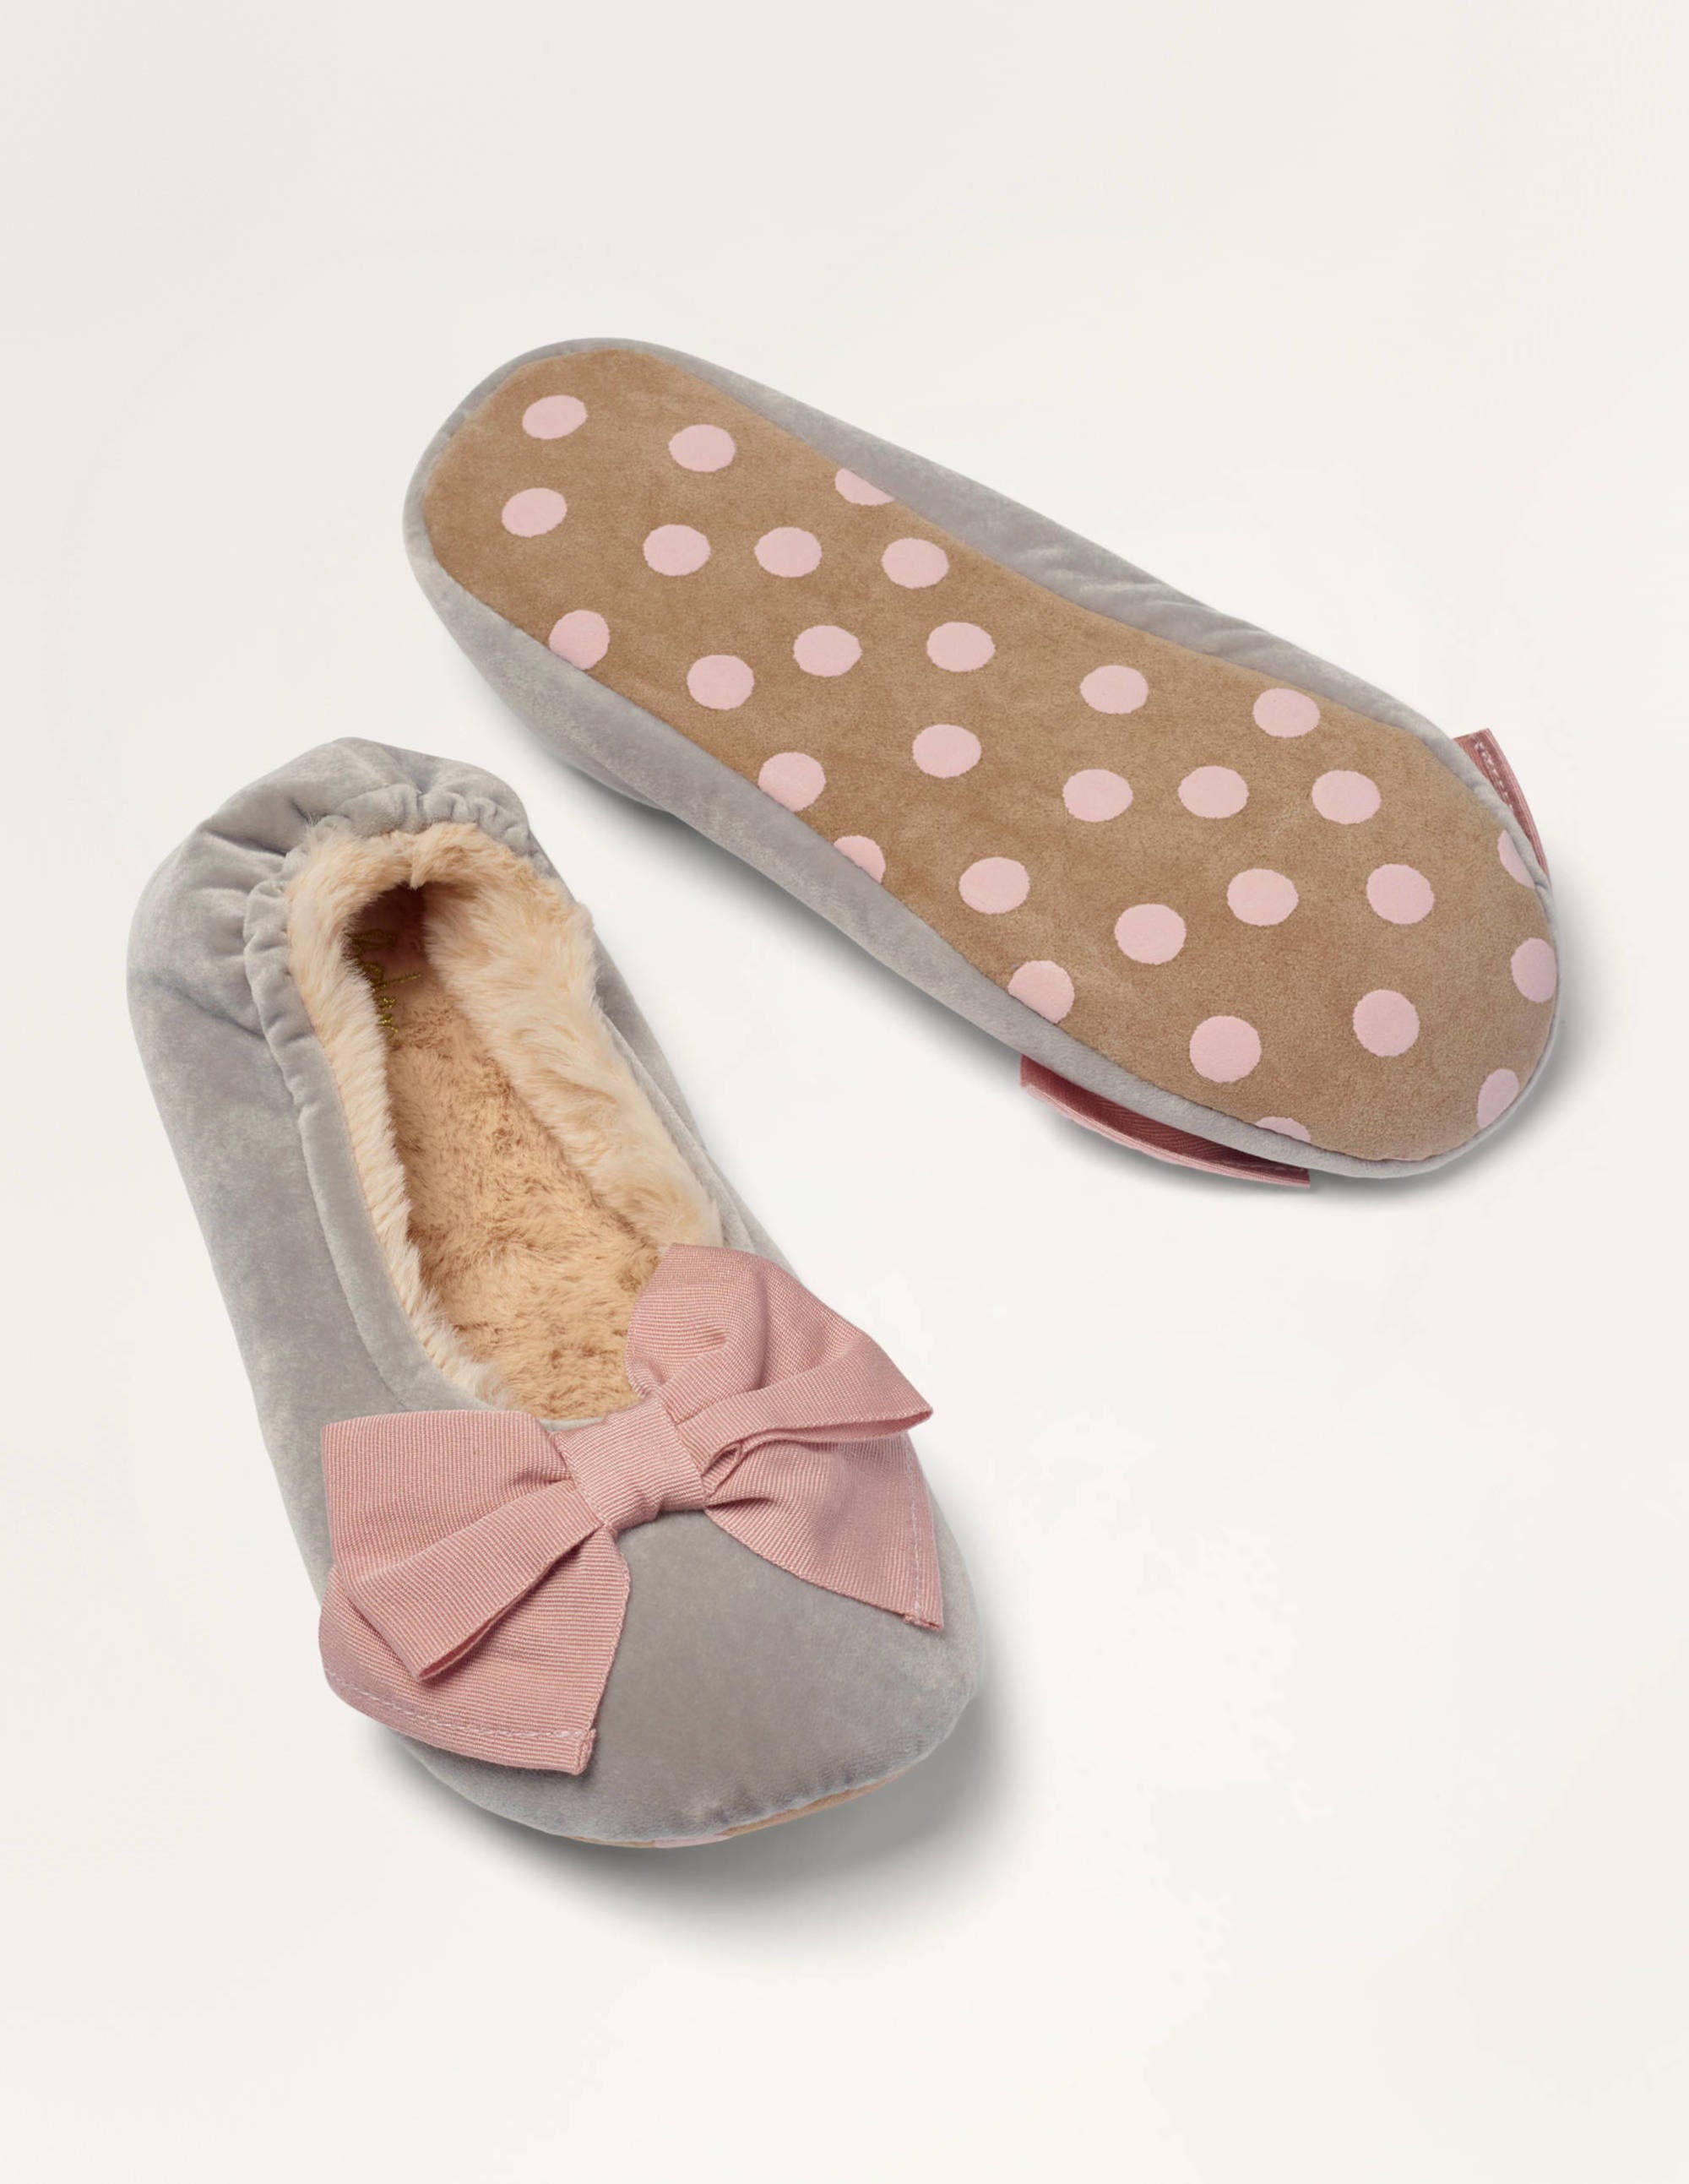 velvet bedroom slippers